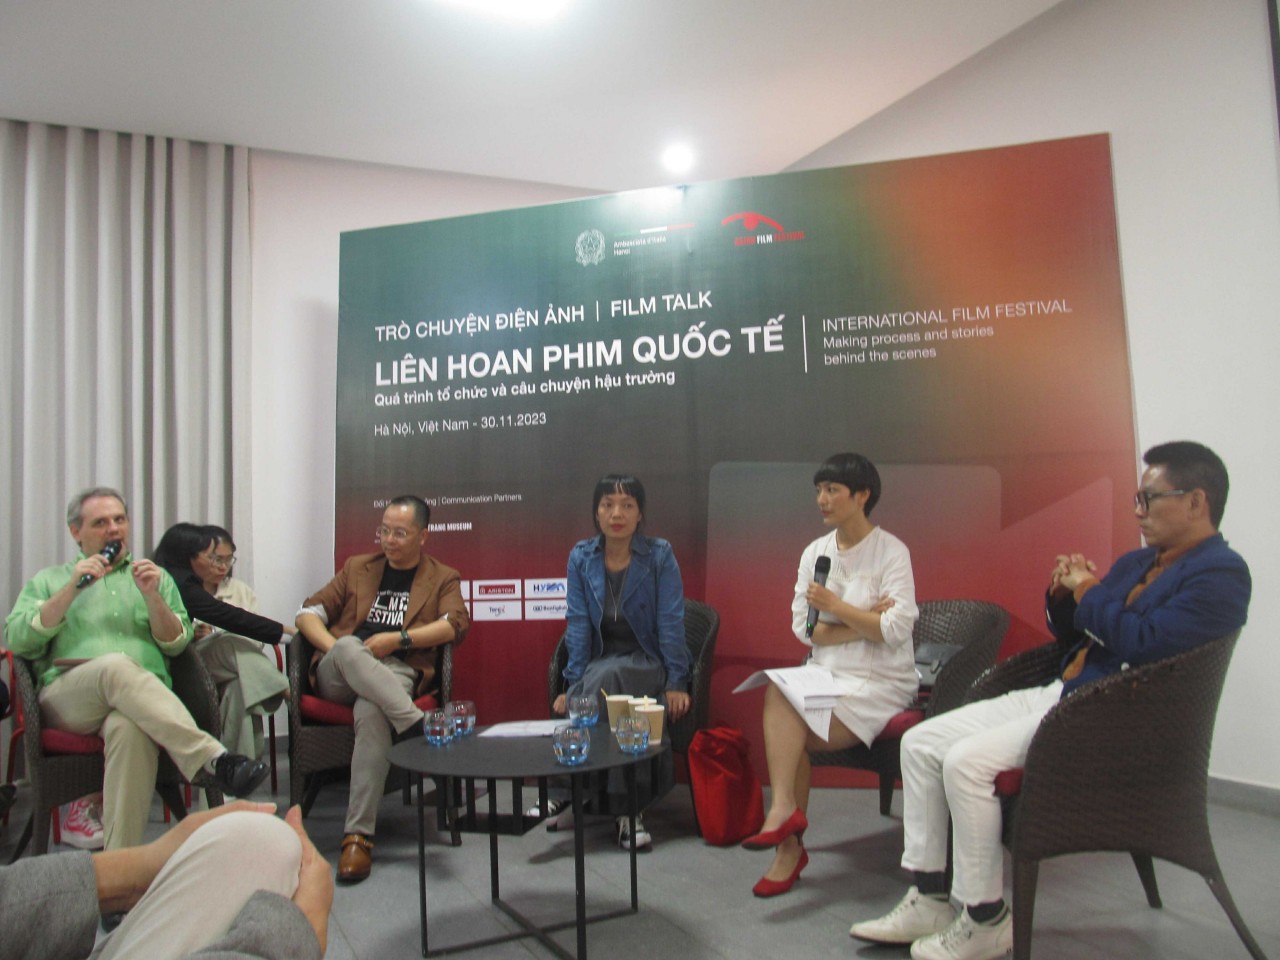 Italian Film Festival 2023: Challenges For International Film Festivals In Vietnam